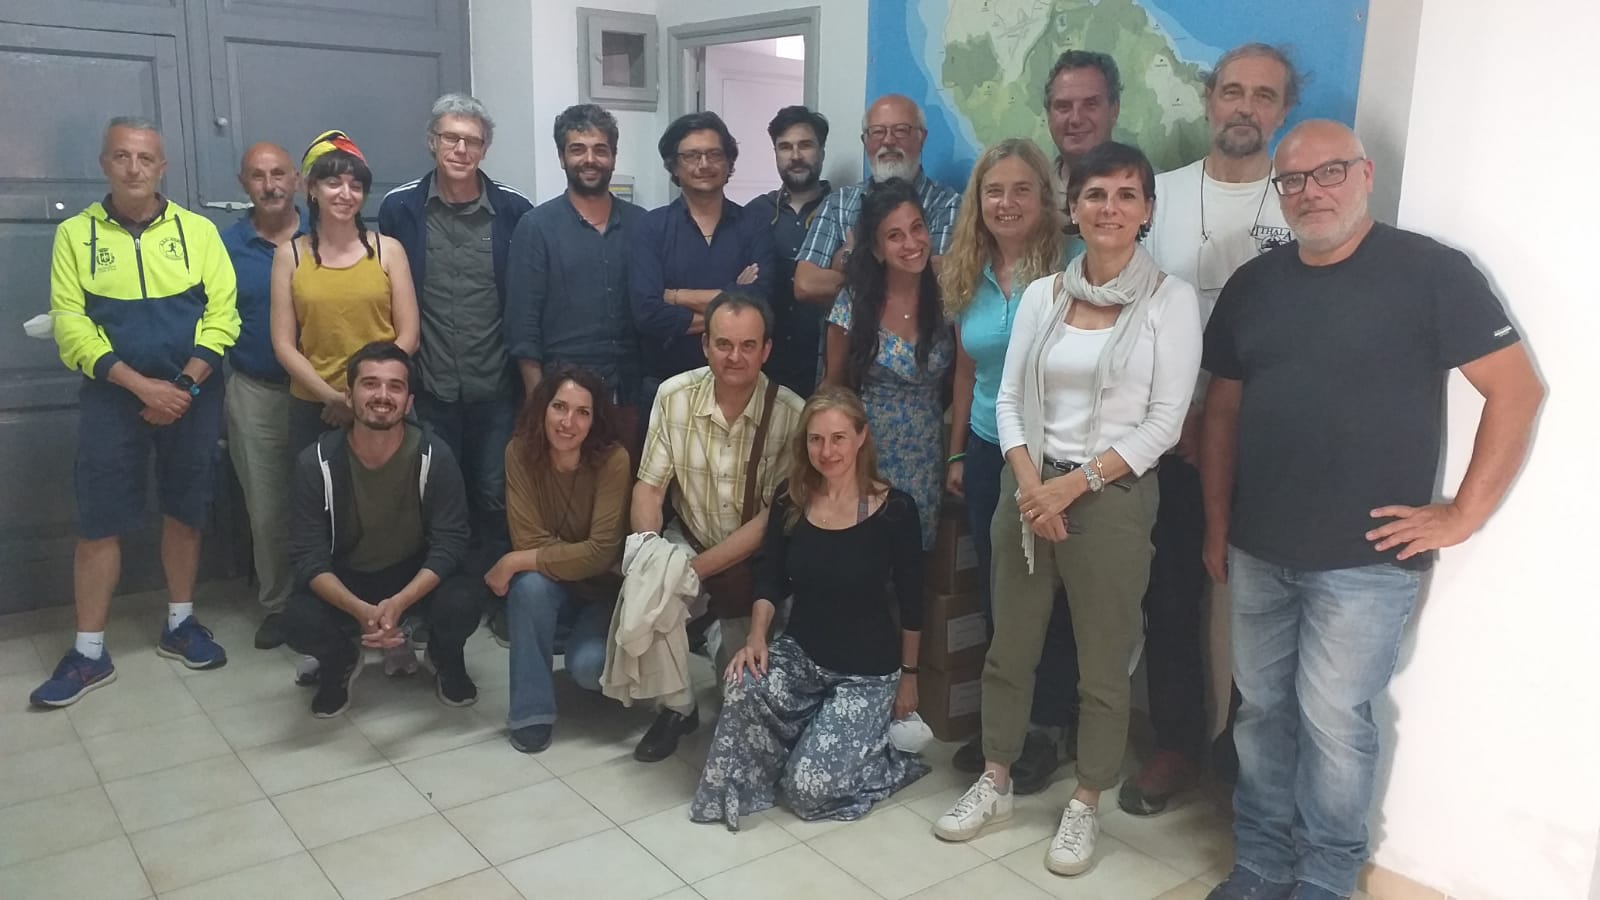 Biodiversità Bagno dell'Acqua: a Pantelleria l'equipe multidisciplinare di ricercatori coordinata dal professor Chiocci